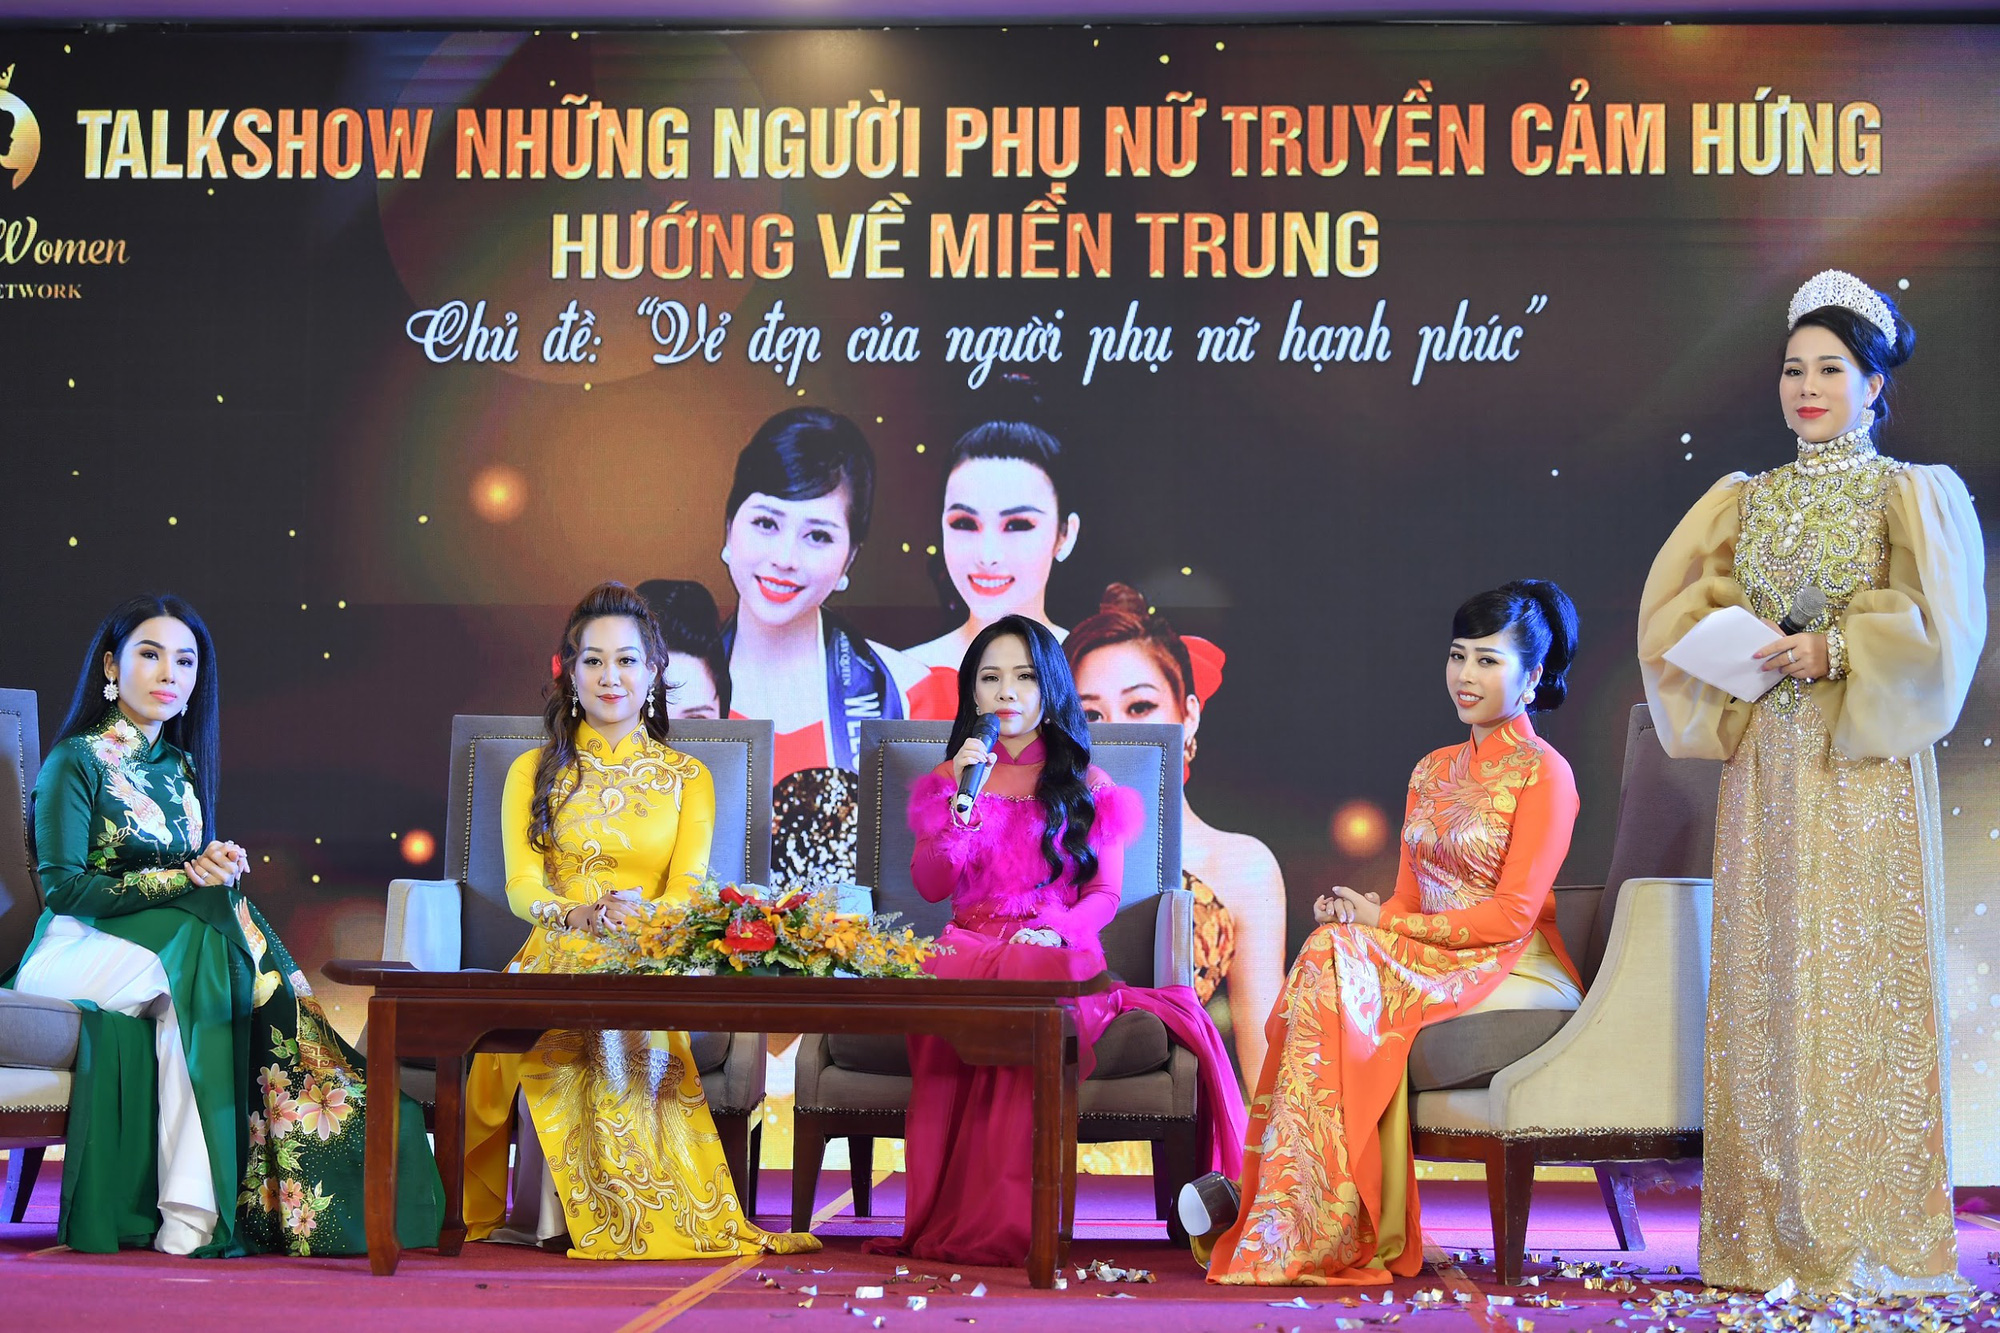 Đại sứ Happy Women Trần Thị An (An Nhiên) đại diện 5000 nữ lãnh đạo thắp lửa truyền cảm hứng - hướng về miền trung - Ảnh 1.